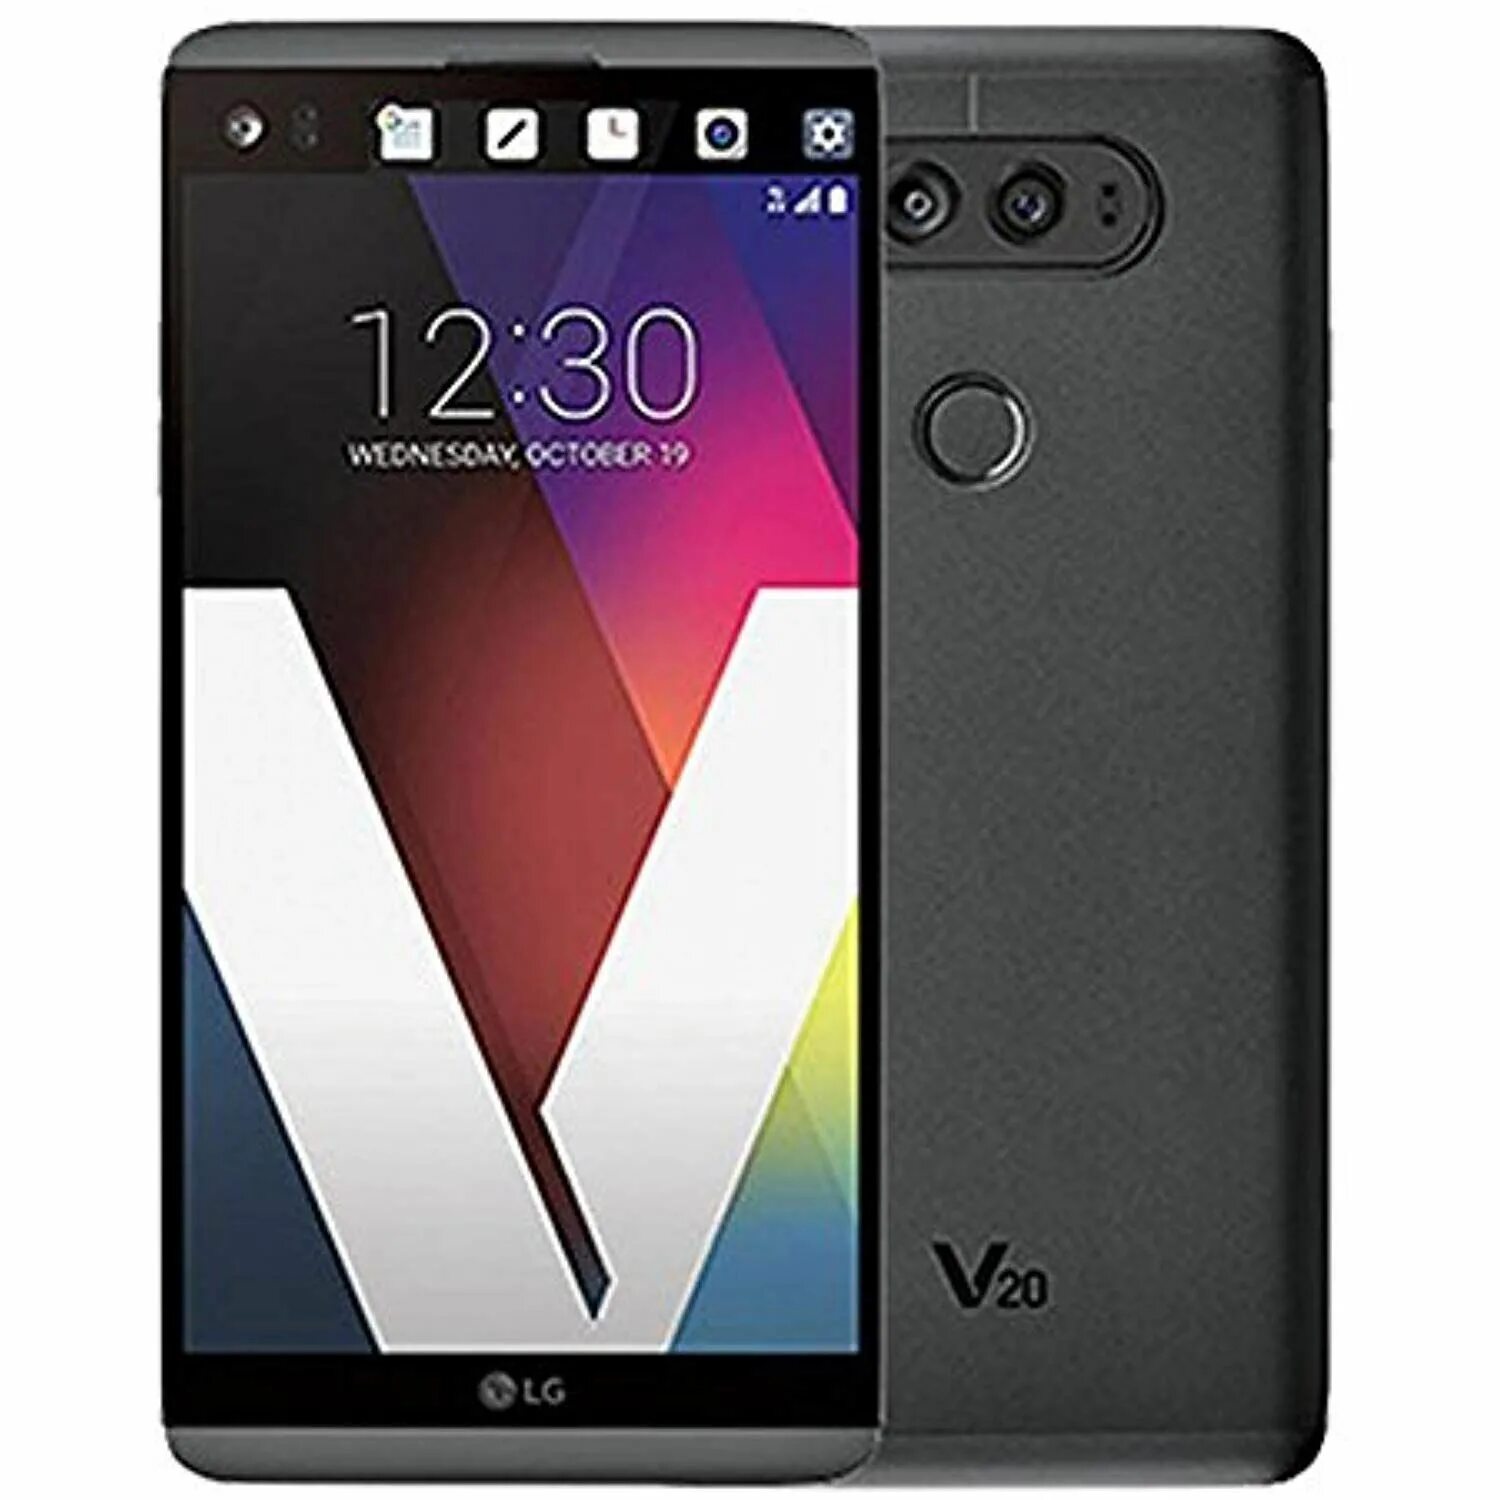 Lg v20. Смартфон LG v20. V20. LG v20 серебристый. LG v20 характеристики телефона.